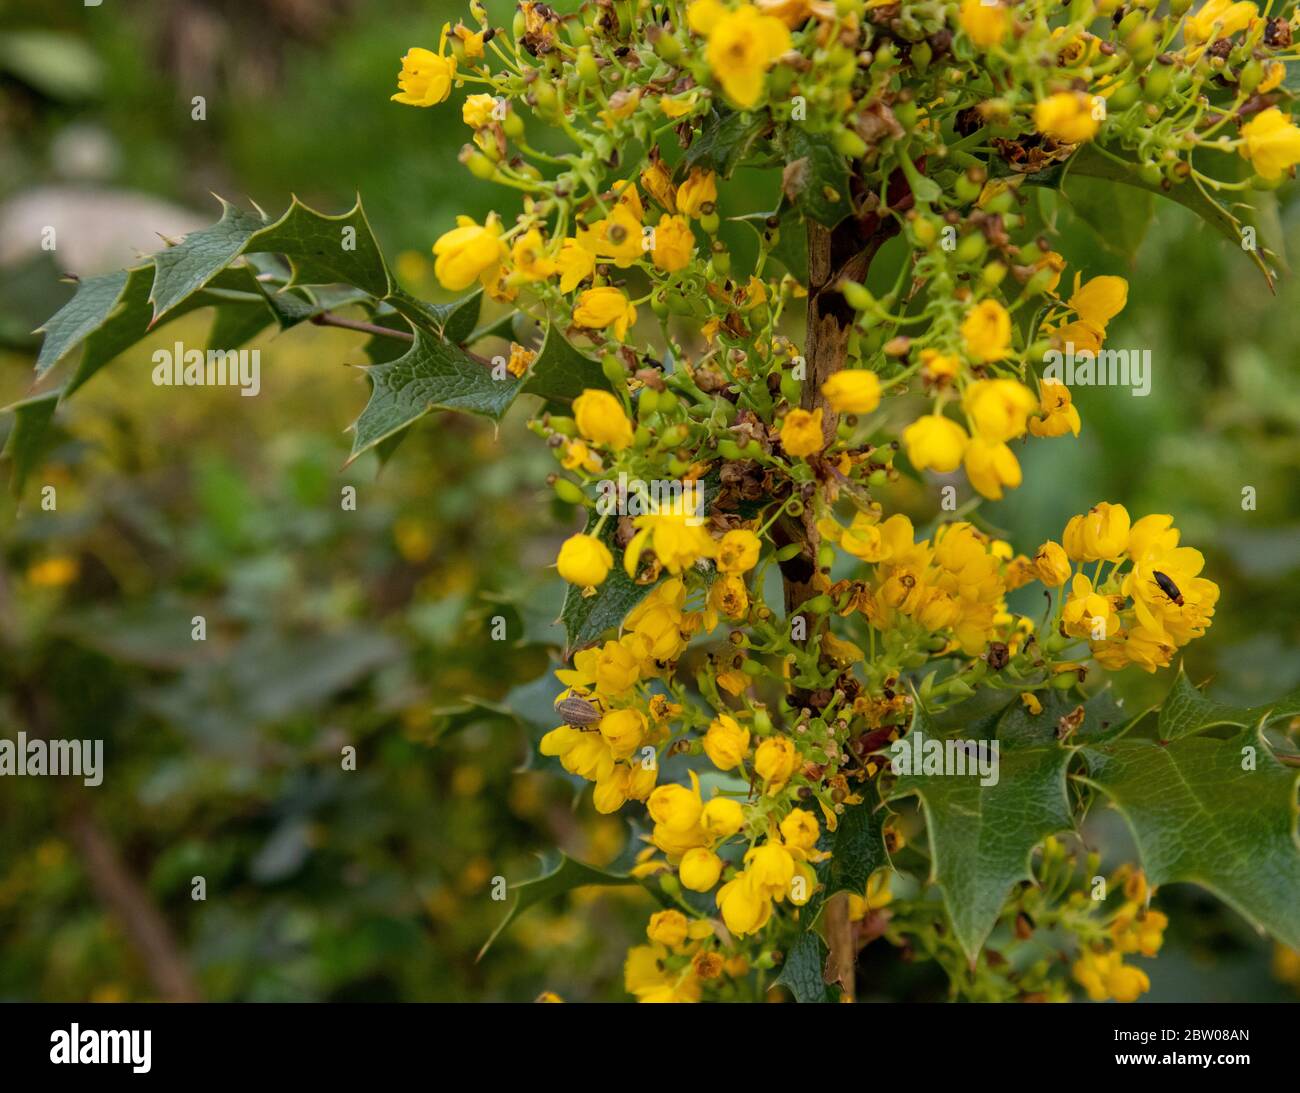 Green leaves and yellow flowers of Mahonia Aquifolium Stock Photo